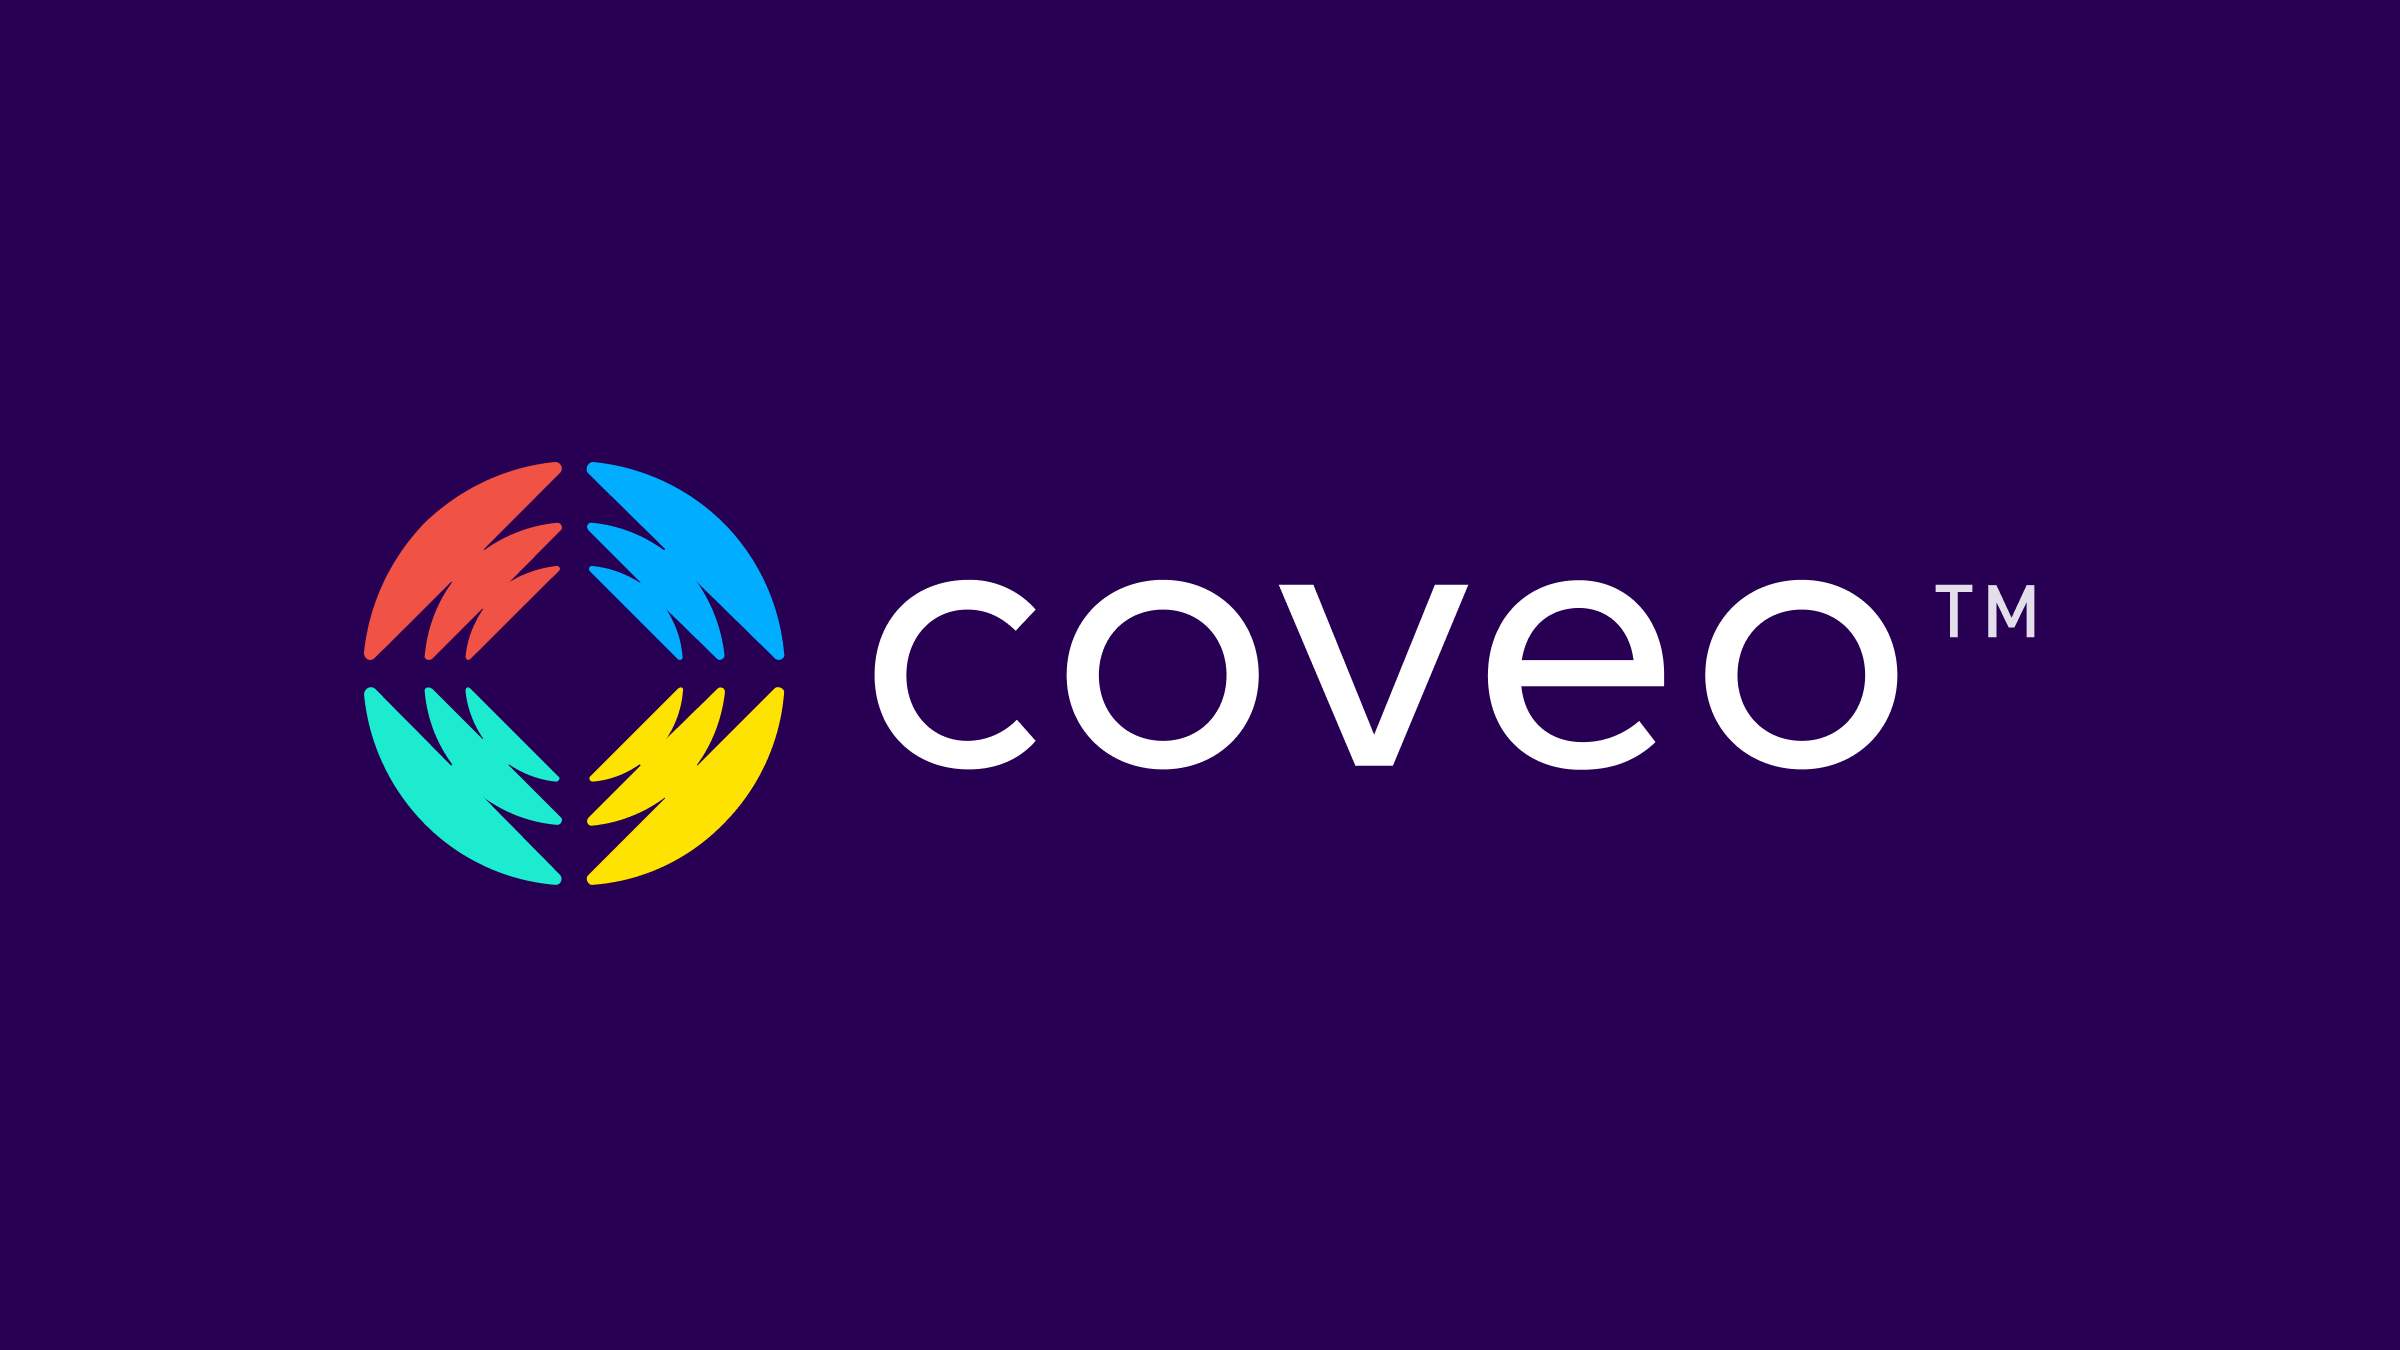 (c) Coveo.com